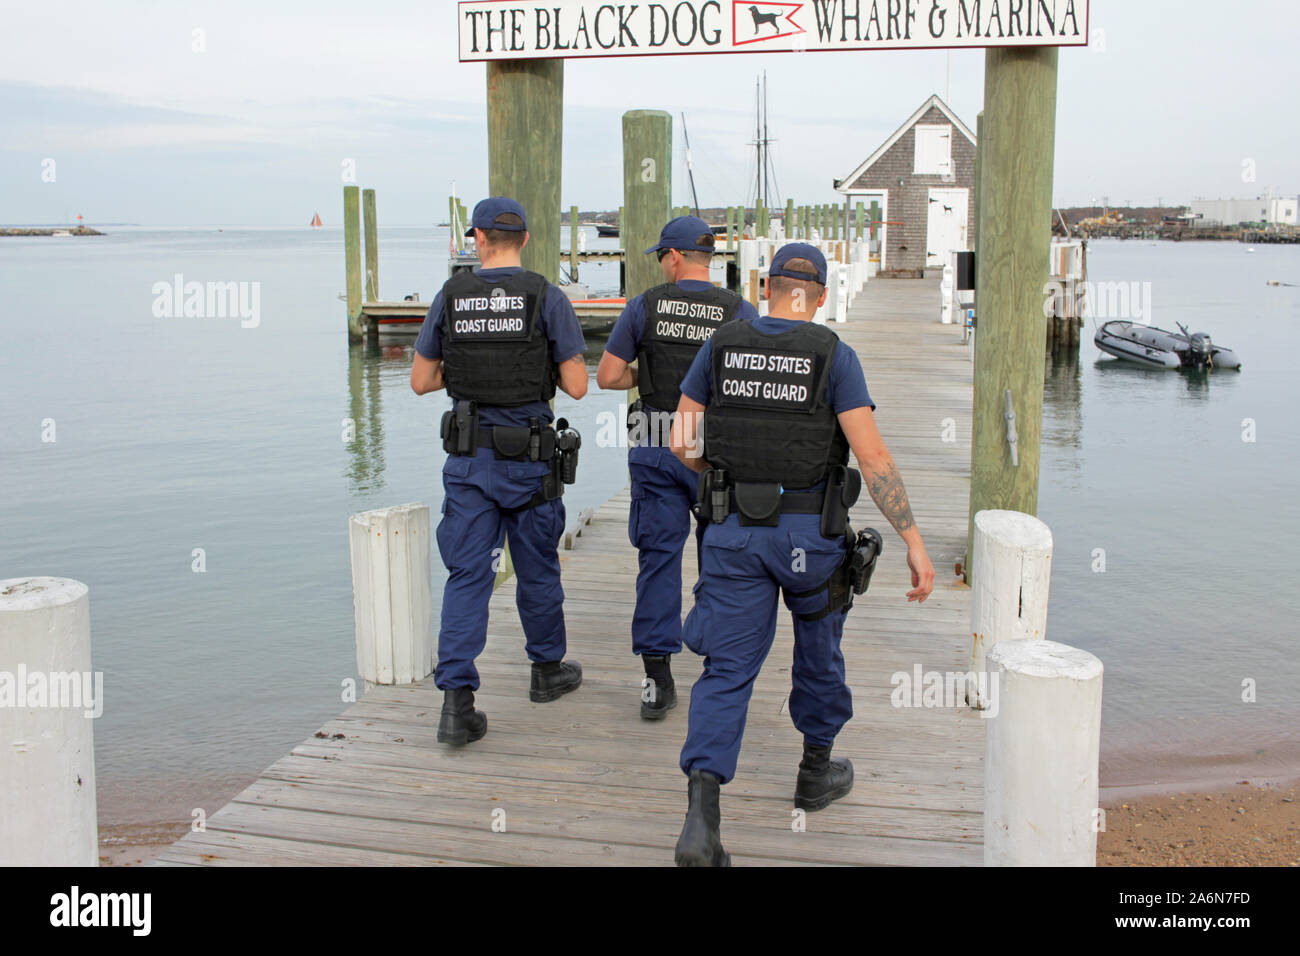 Oficiales de la Guardia Costera de los Estados Unidos al perro negro Wharf, Vineyard Haven, Martha's Vineyard, Massachusetts, EE.UU. Foto de stock